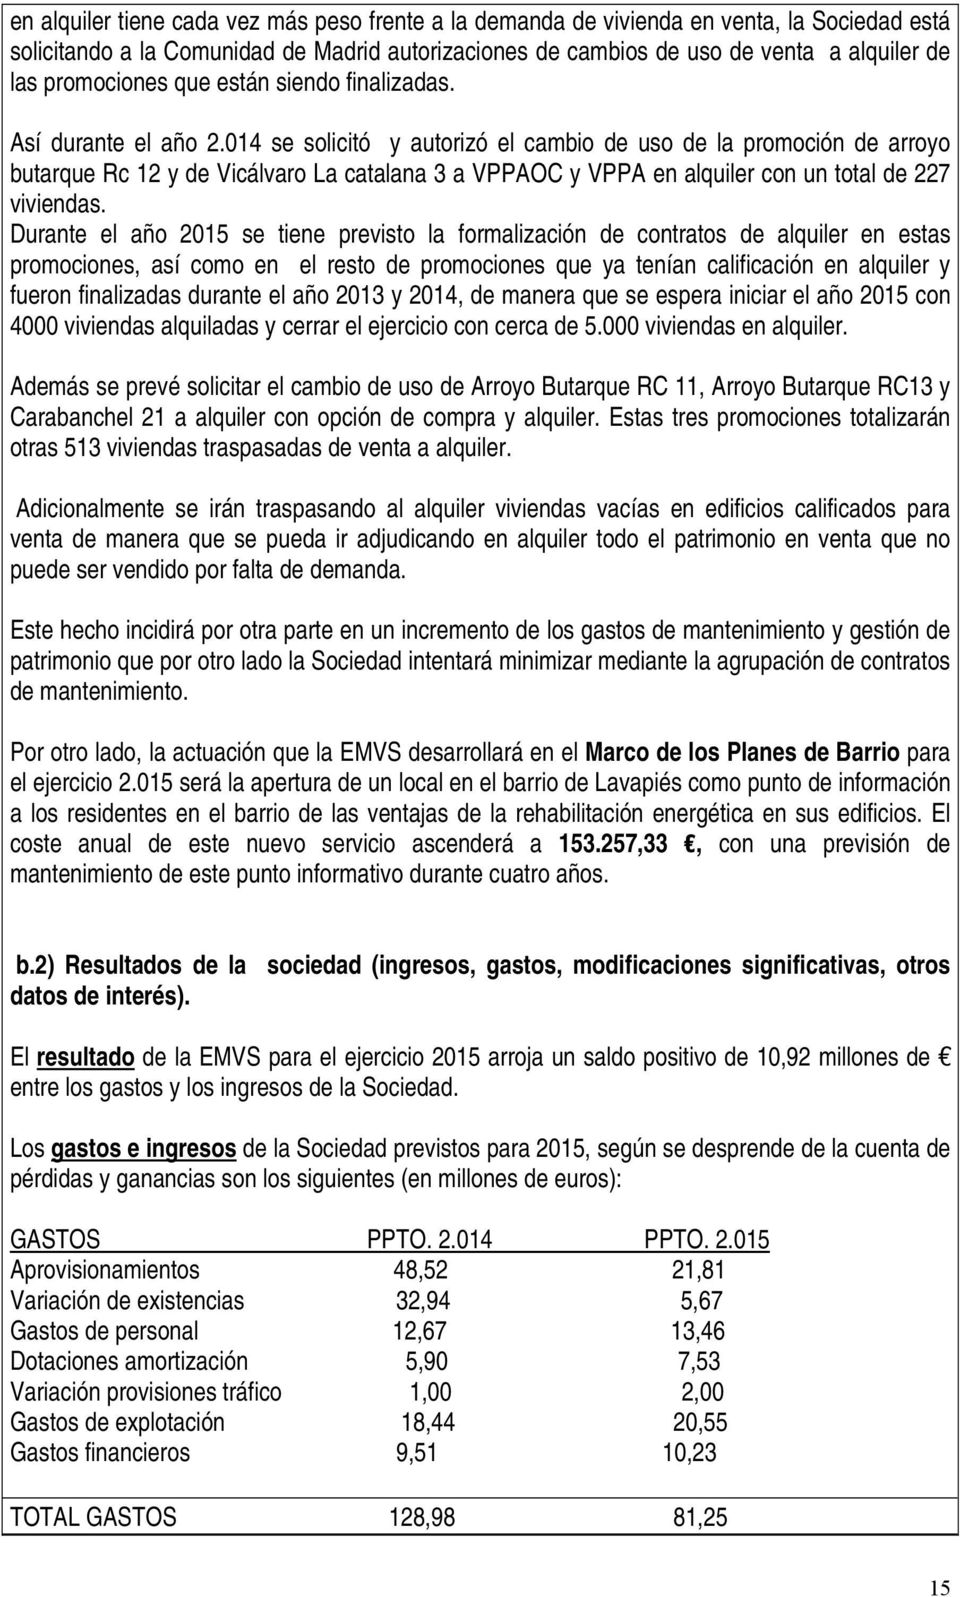 014 se solicitó y autorizó el cambio de uso de la promoción de arroyo butarque Rc 12 y de Vicálvaro La catalana 3 a VPPAOC y VPPA en alquiler con un total de 227 viviendas.